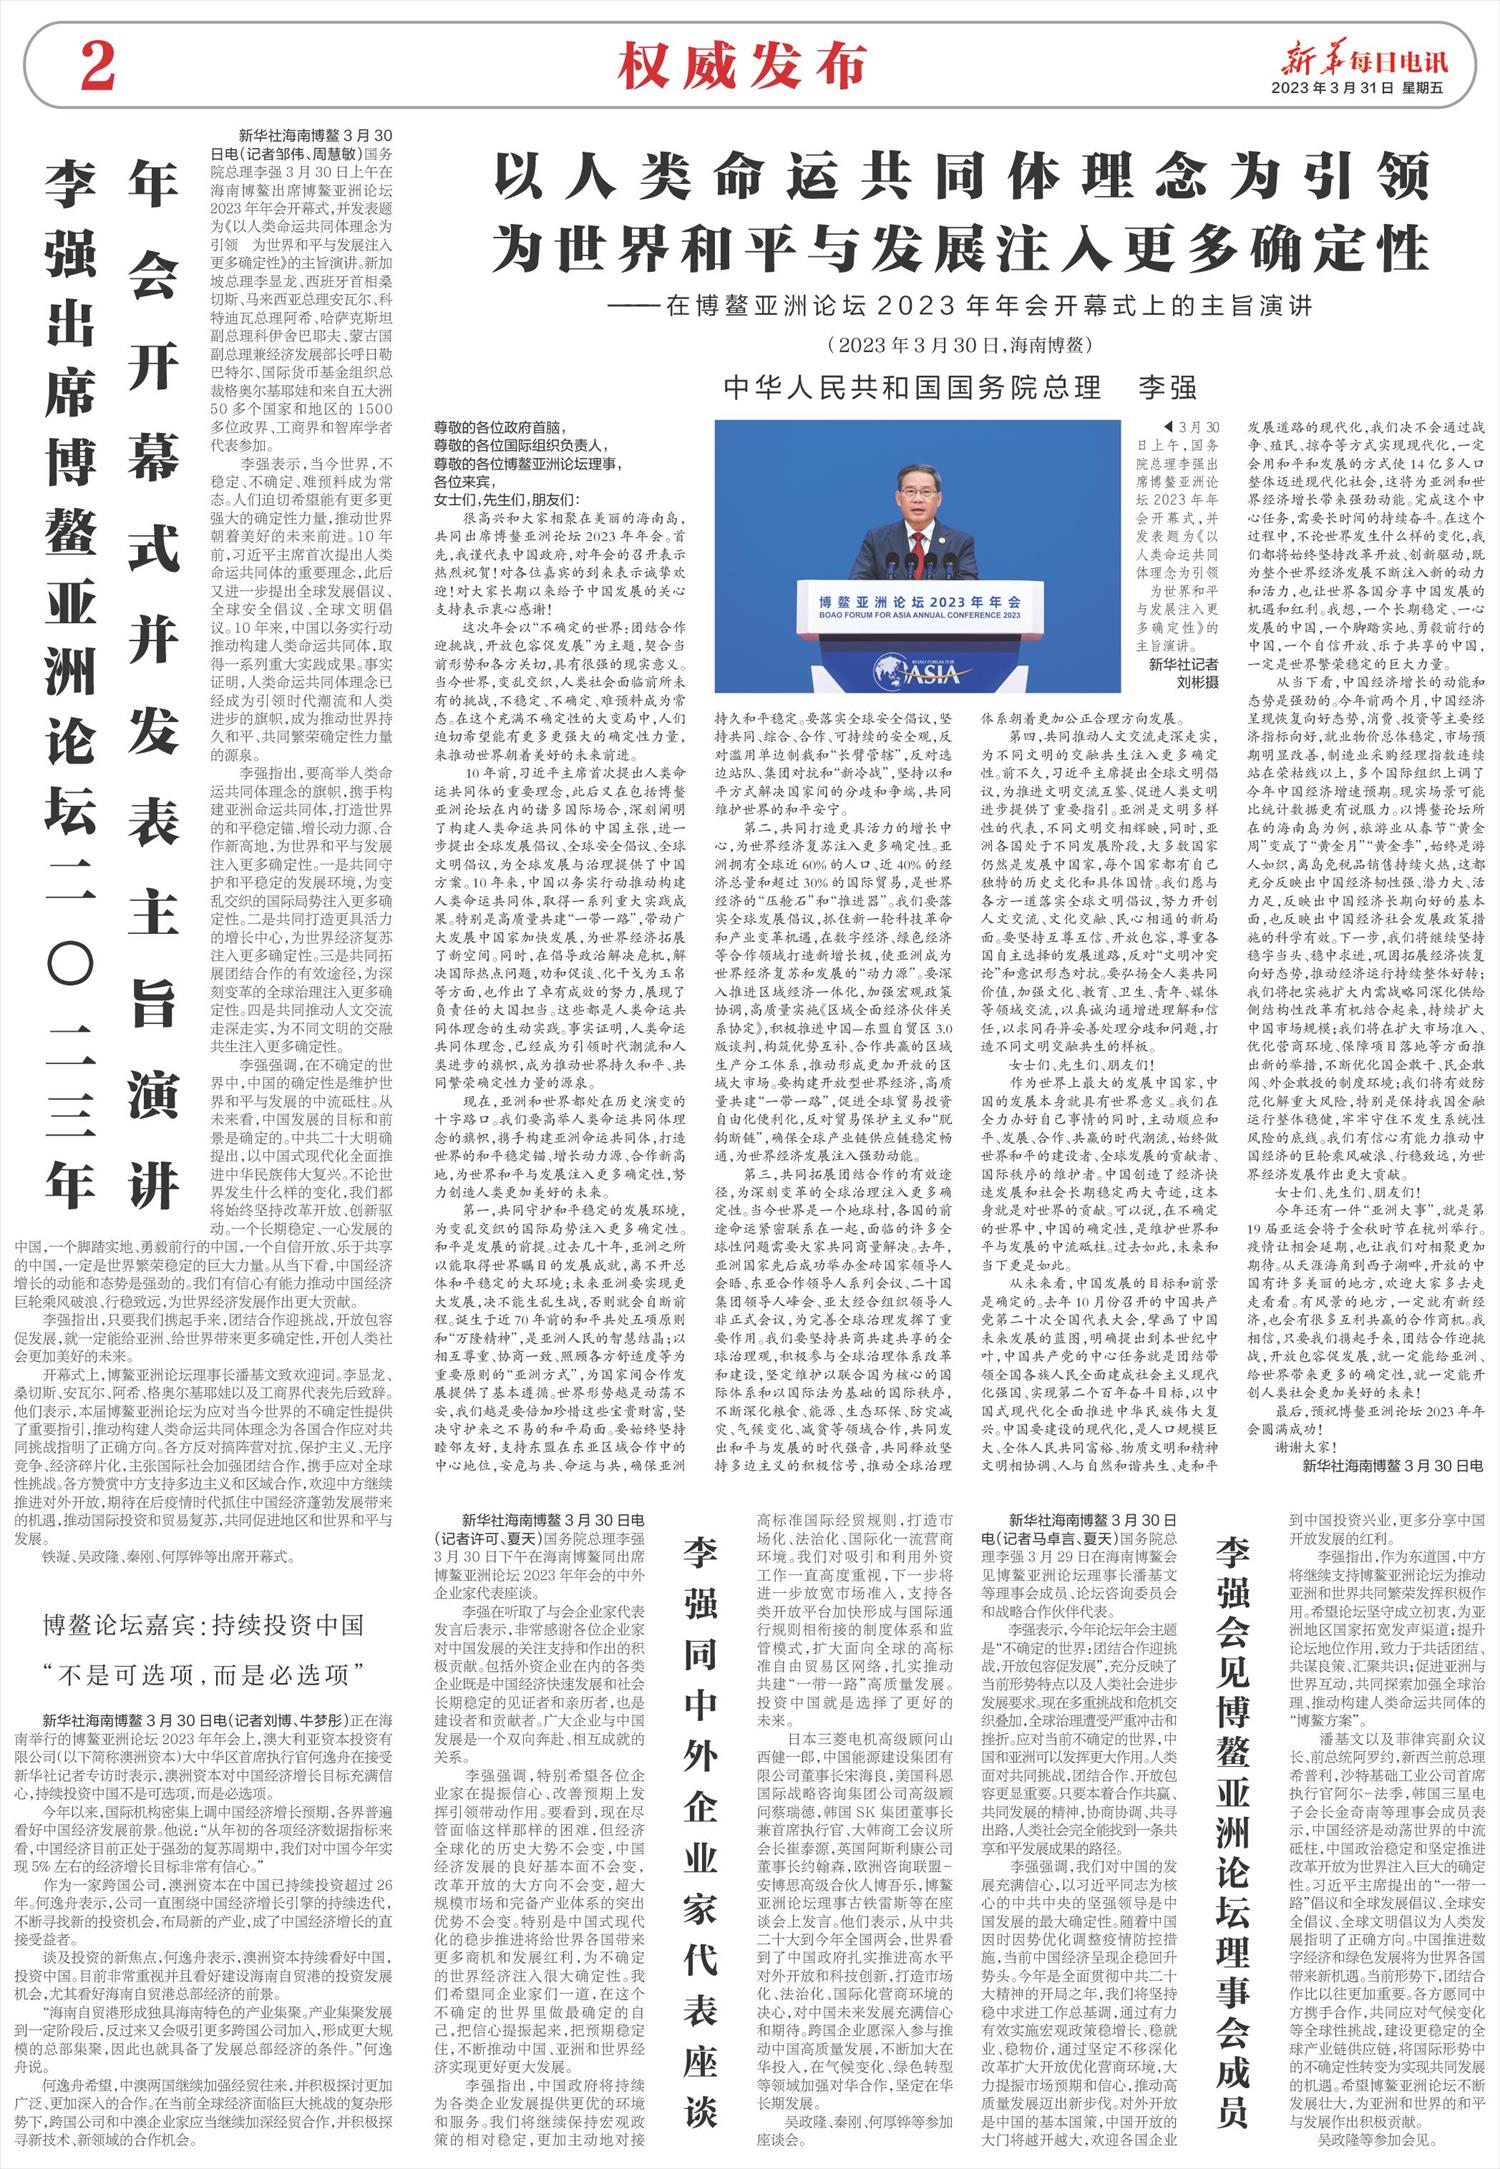 新华每日电讯-微报纸-2023年03月31日